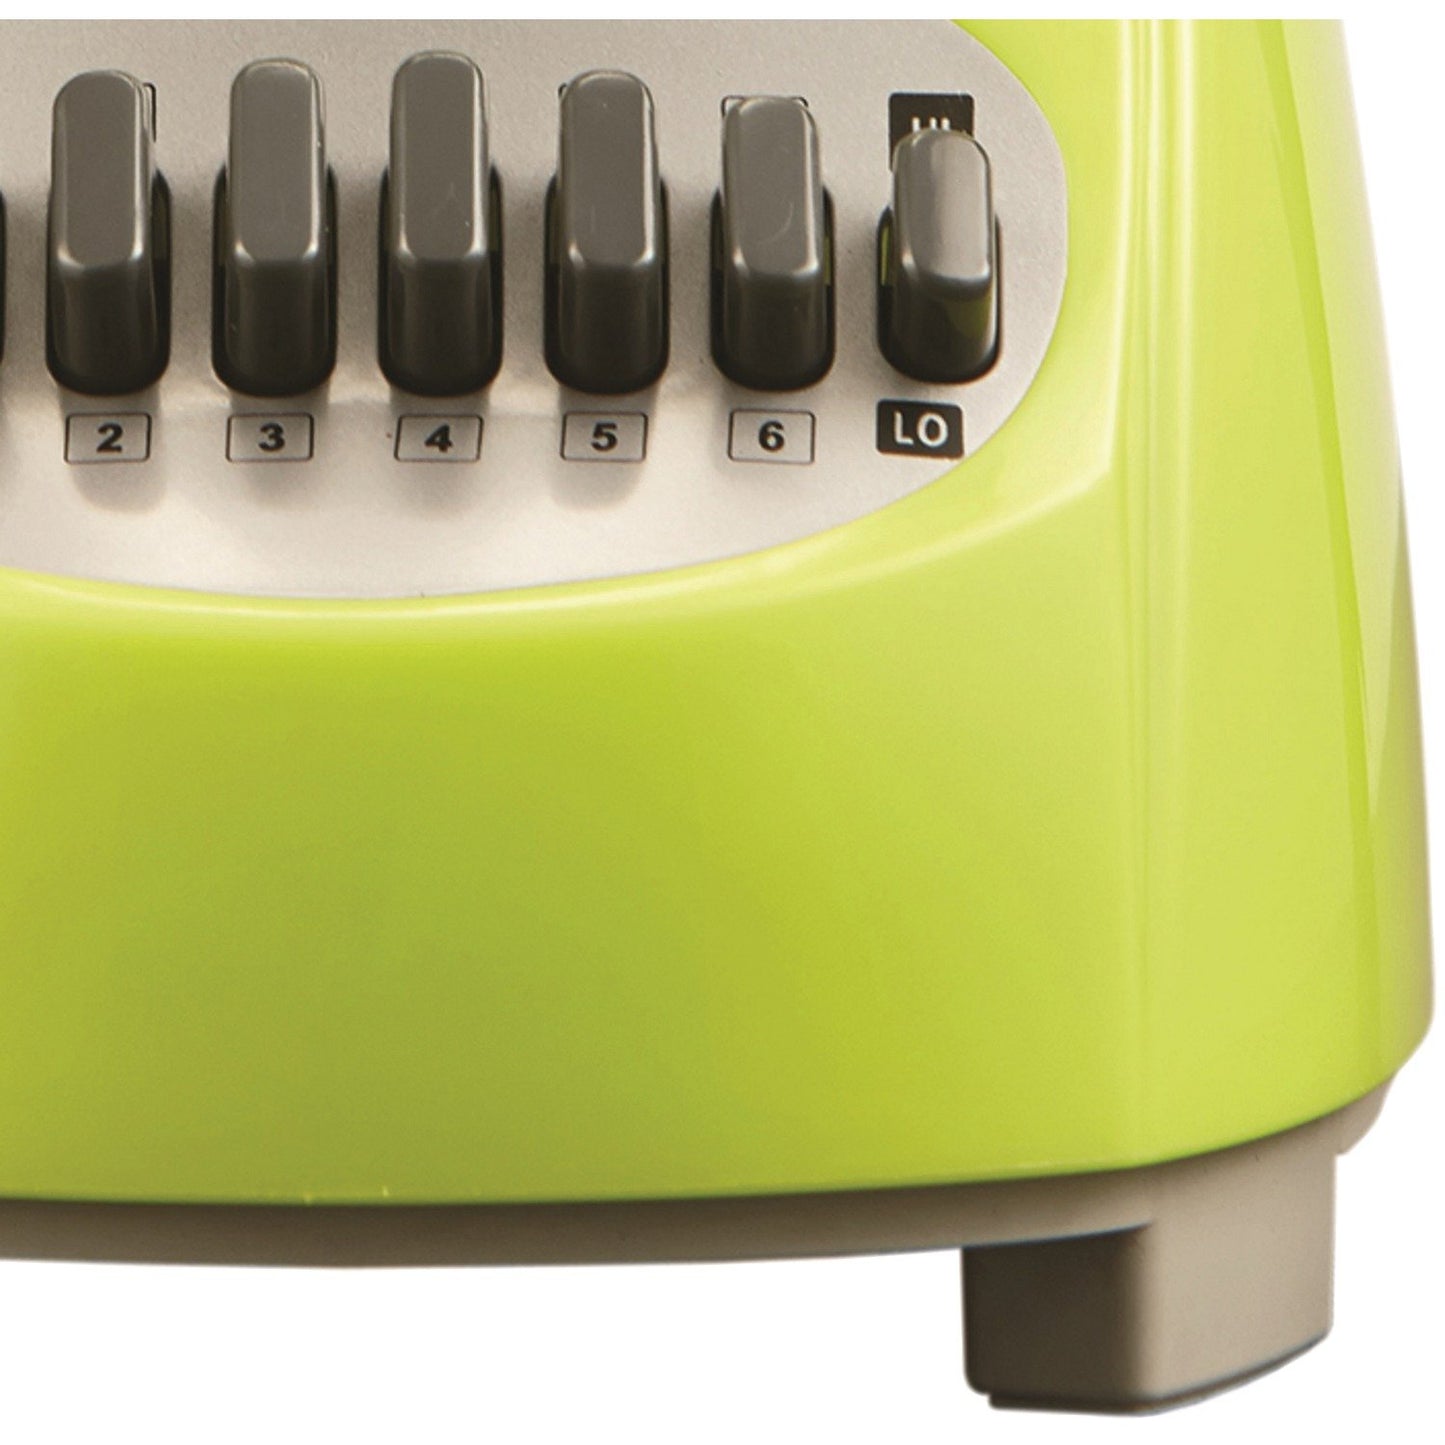 Brentwood Appl. JB-220G 50oz 12-Speed + Pulse Electric Blender (Lime Green)